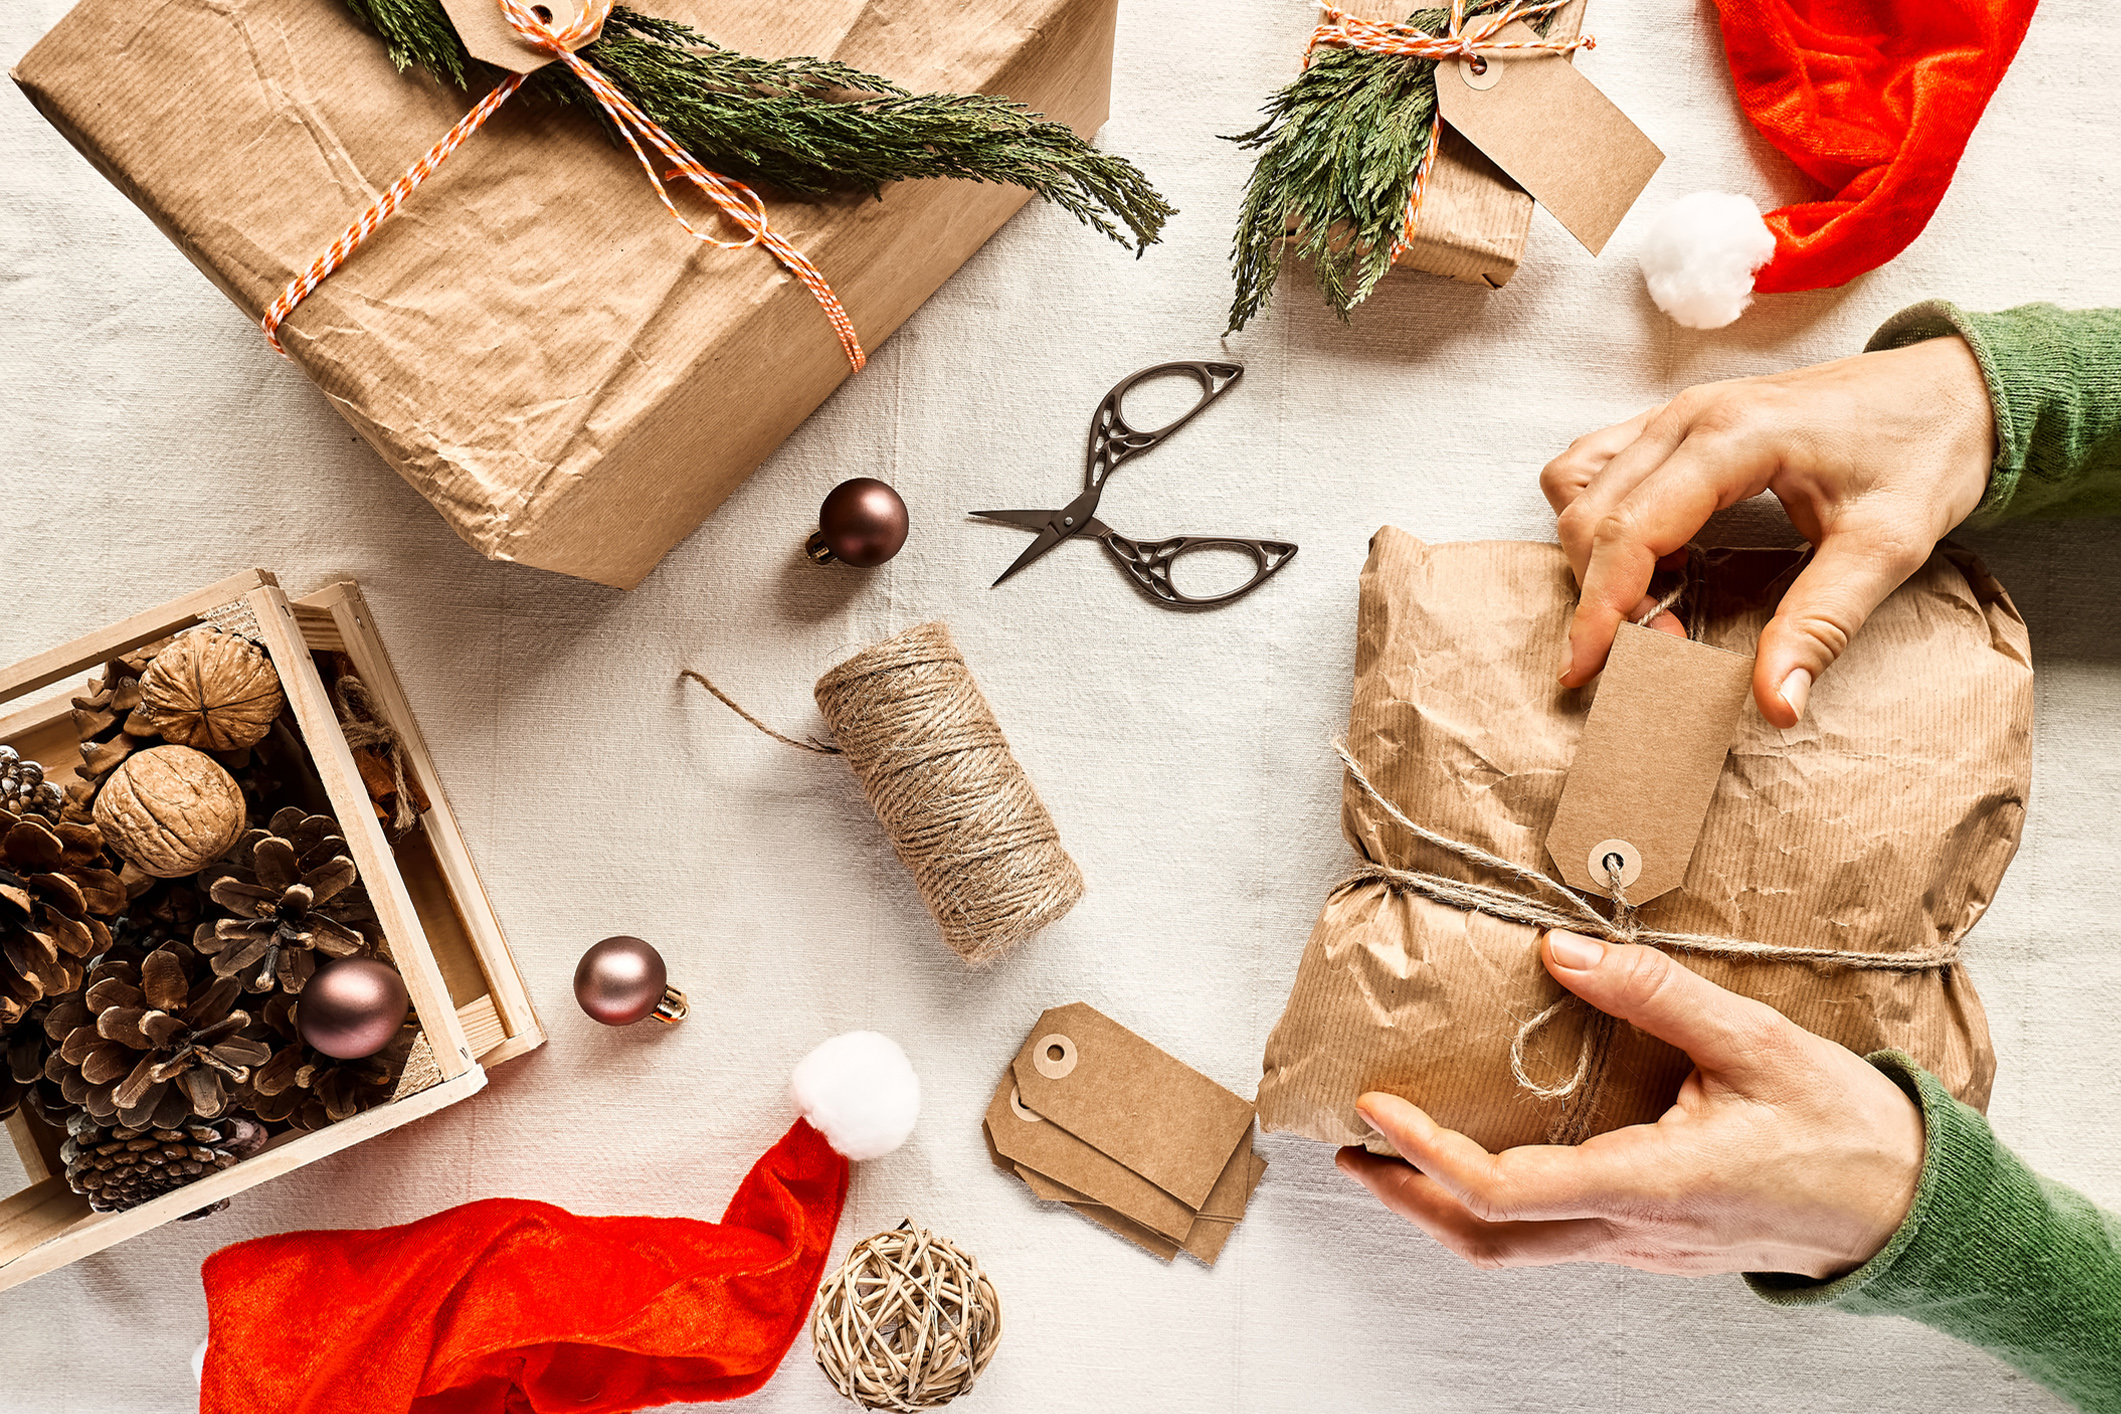 Zu sehen sind Geschenke, Geschenkpapier und andere nachhaltige Materialien zur weihnachtlichen Verpackung von Geschenken